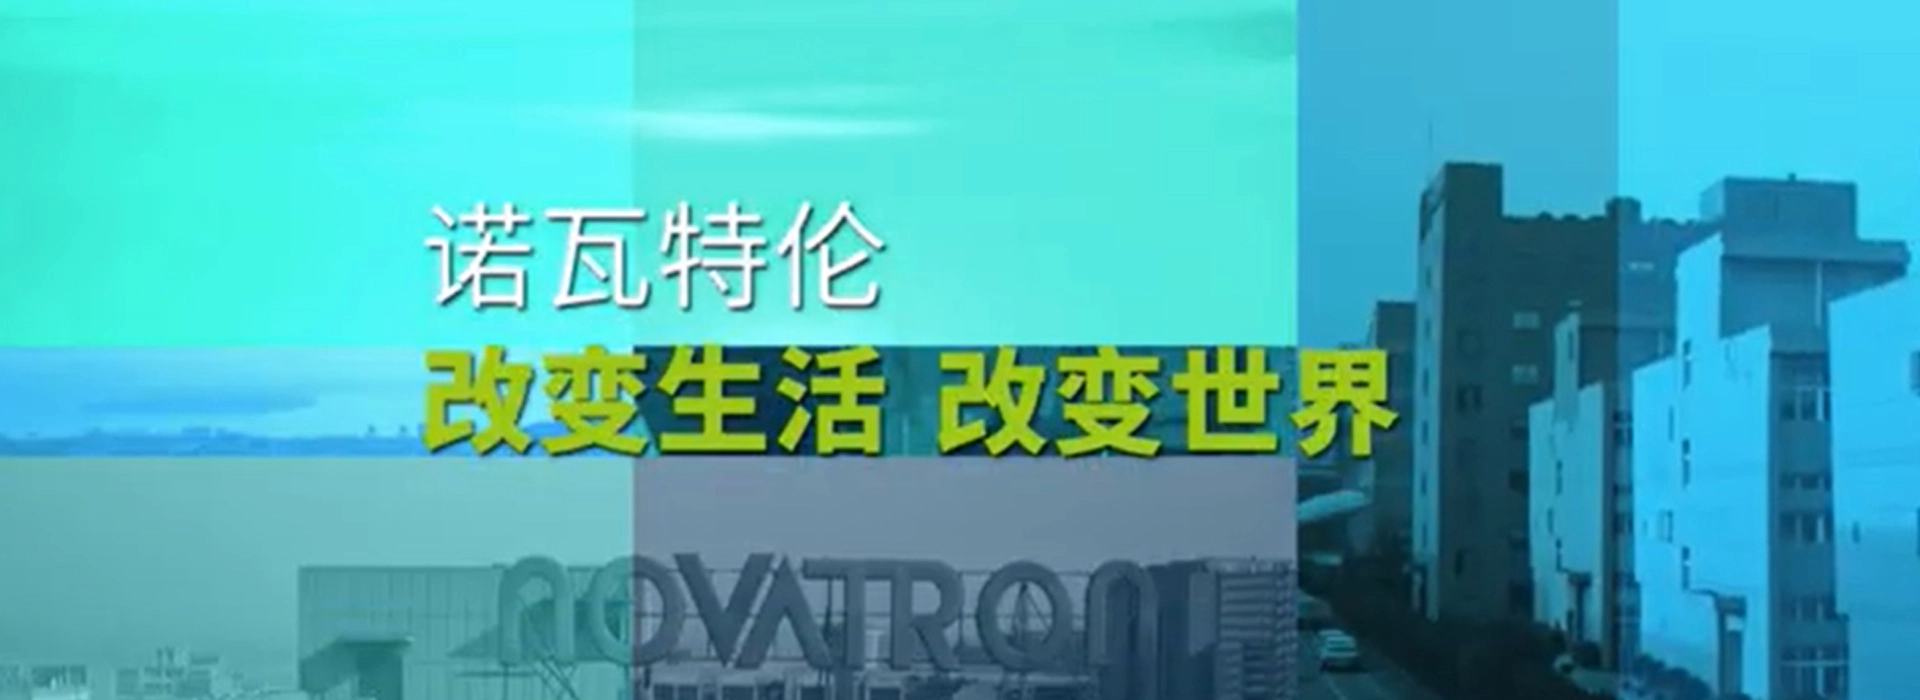 Novatron Company Profileビデオ-中国语